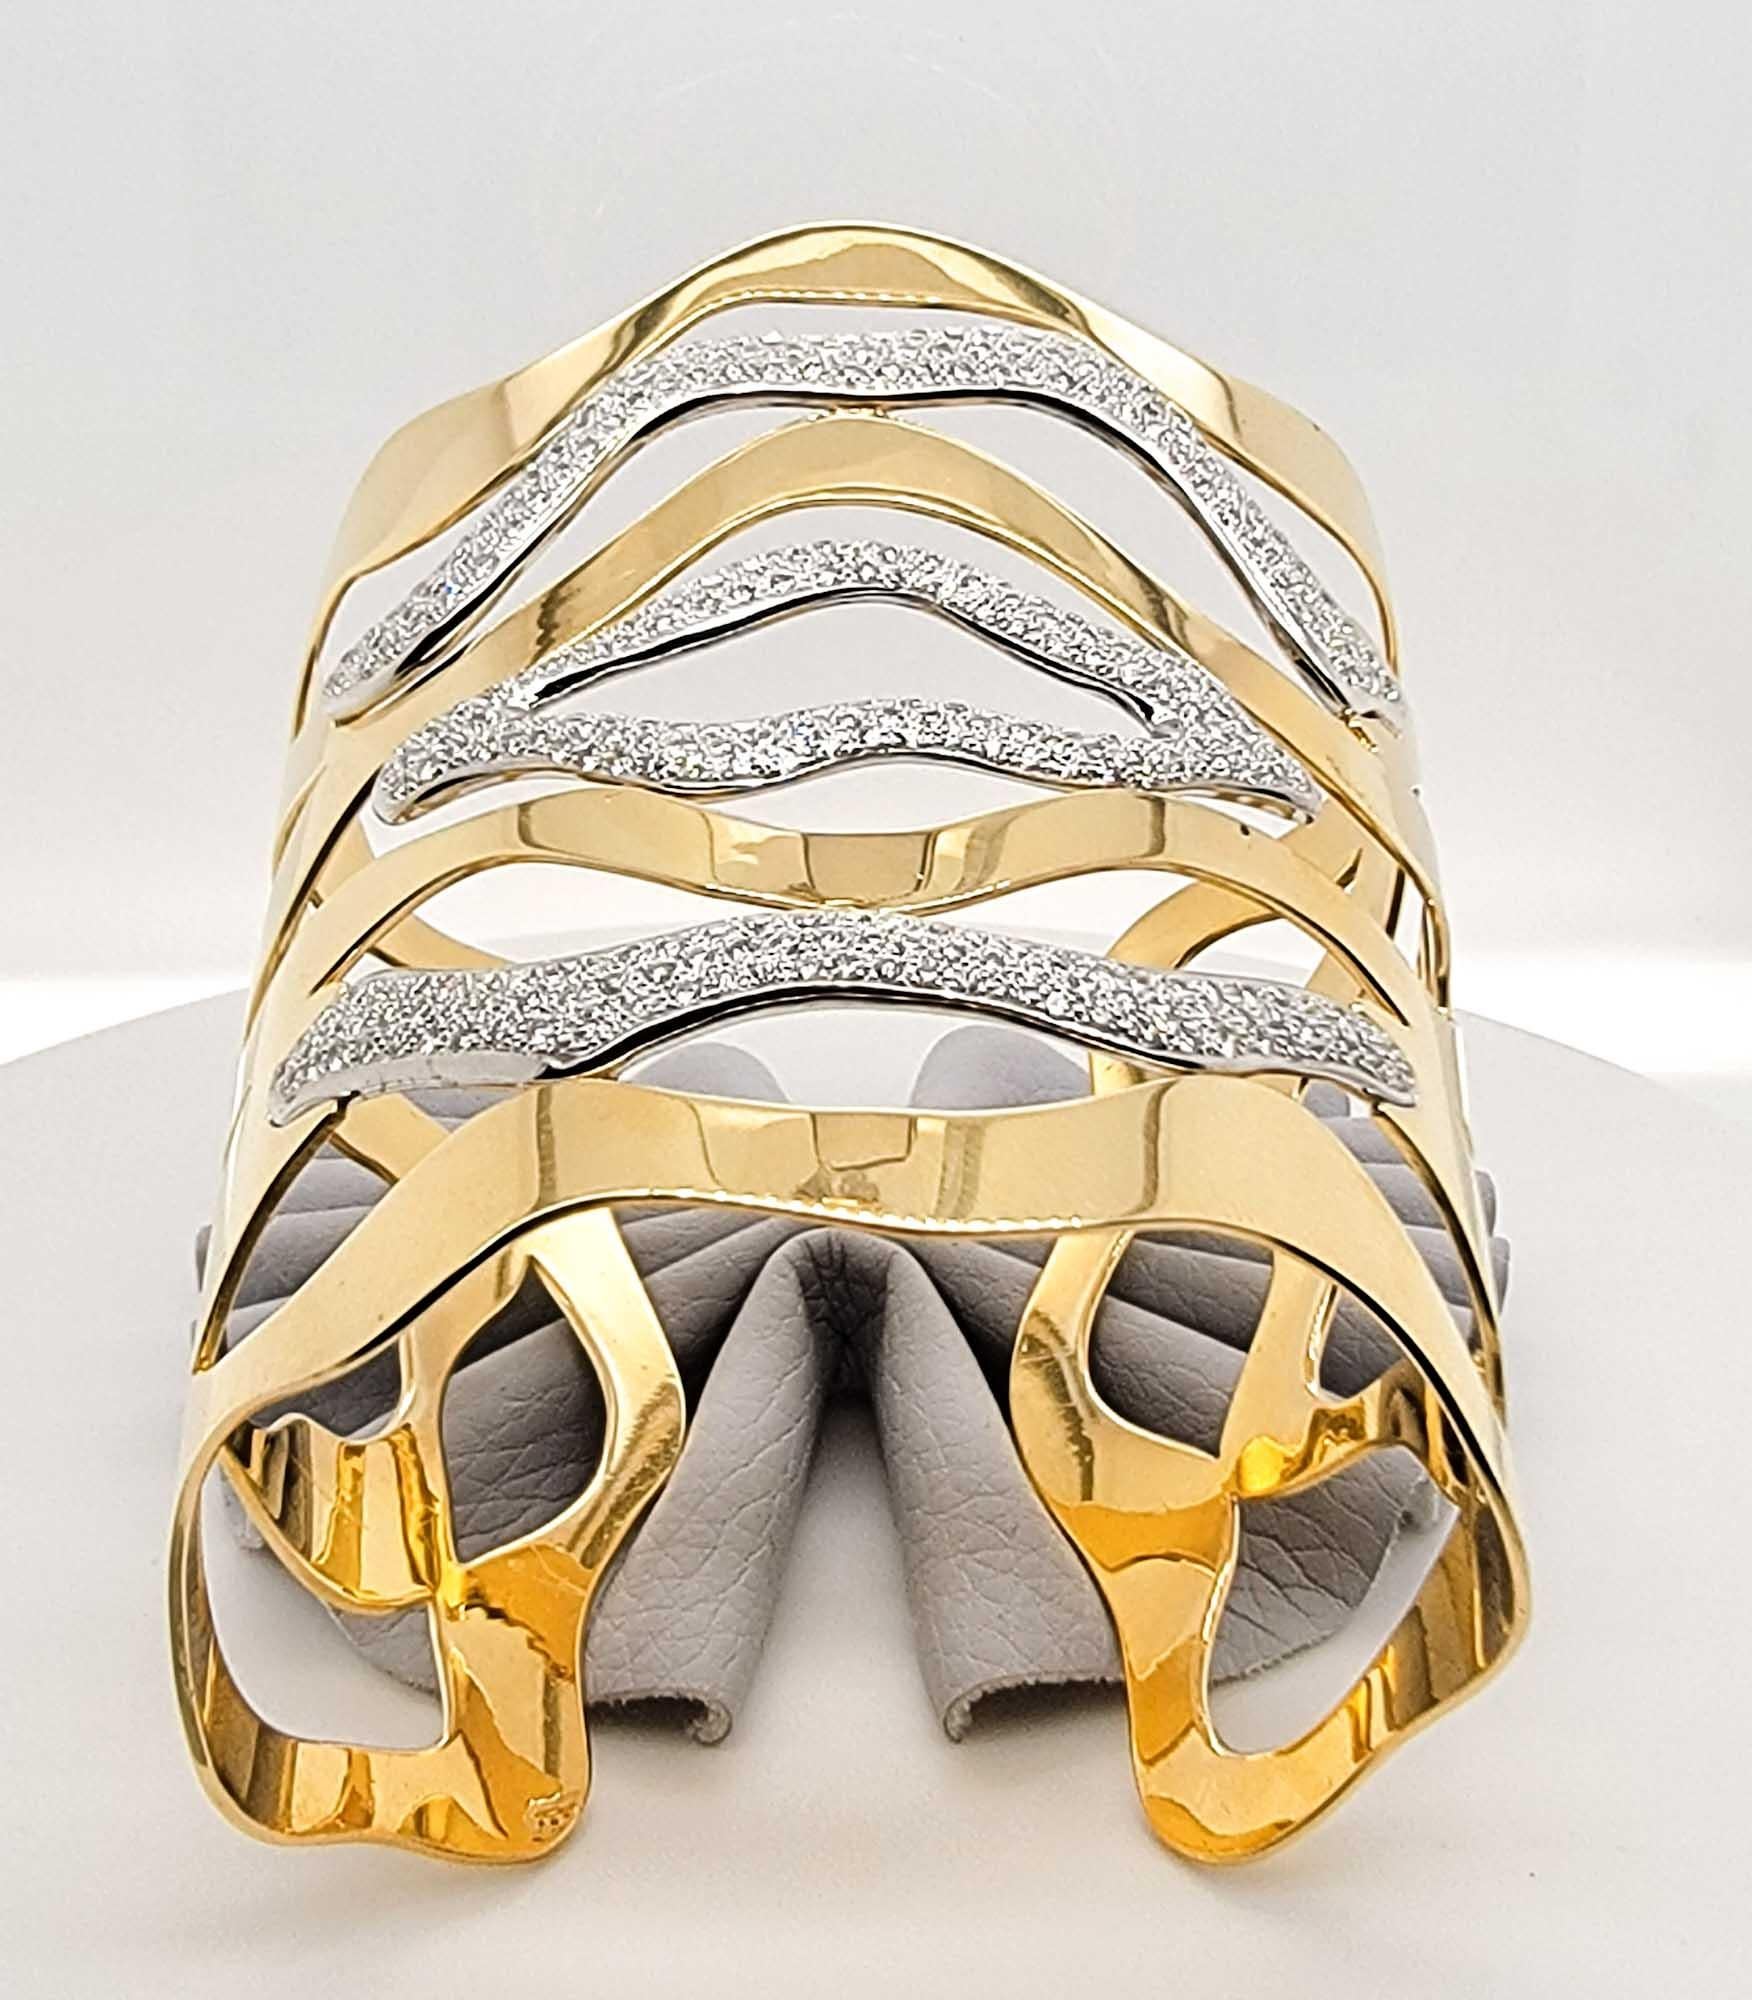 Ce magnifique bracelet en or jaune 18 carats est orné de diamants pesant au total 3 carats.

Sophia D by Joseph Dardashti Ltd est connue dans le monde entier depuis 35 ans et s'inspire du design classique de l'Art déco qui fusionne avec les